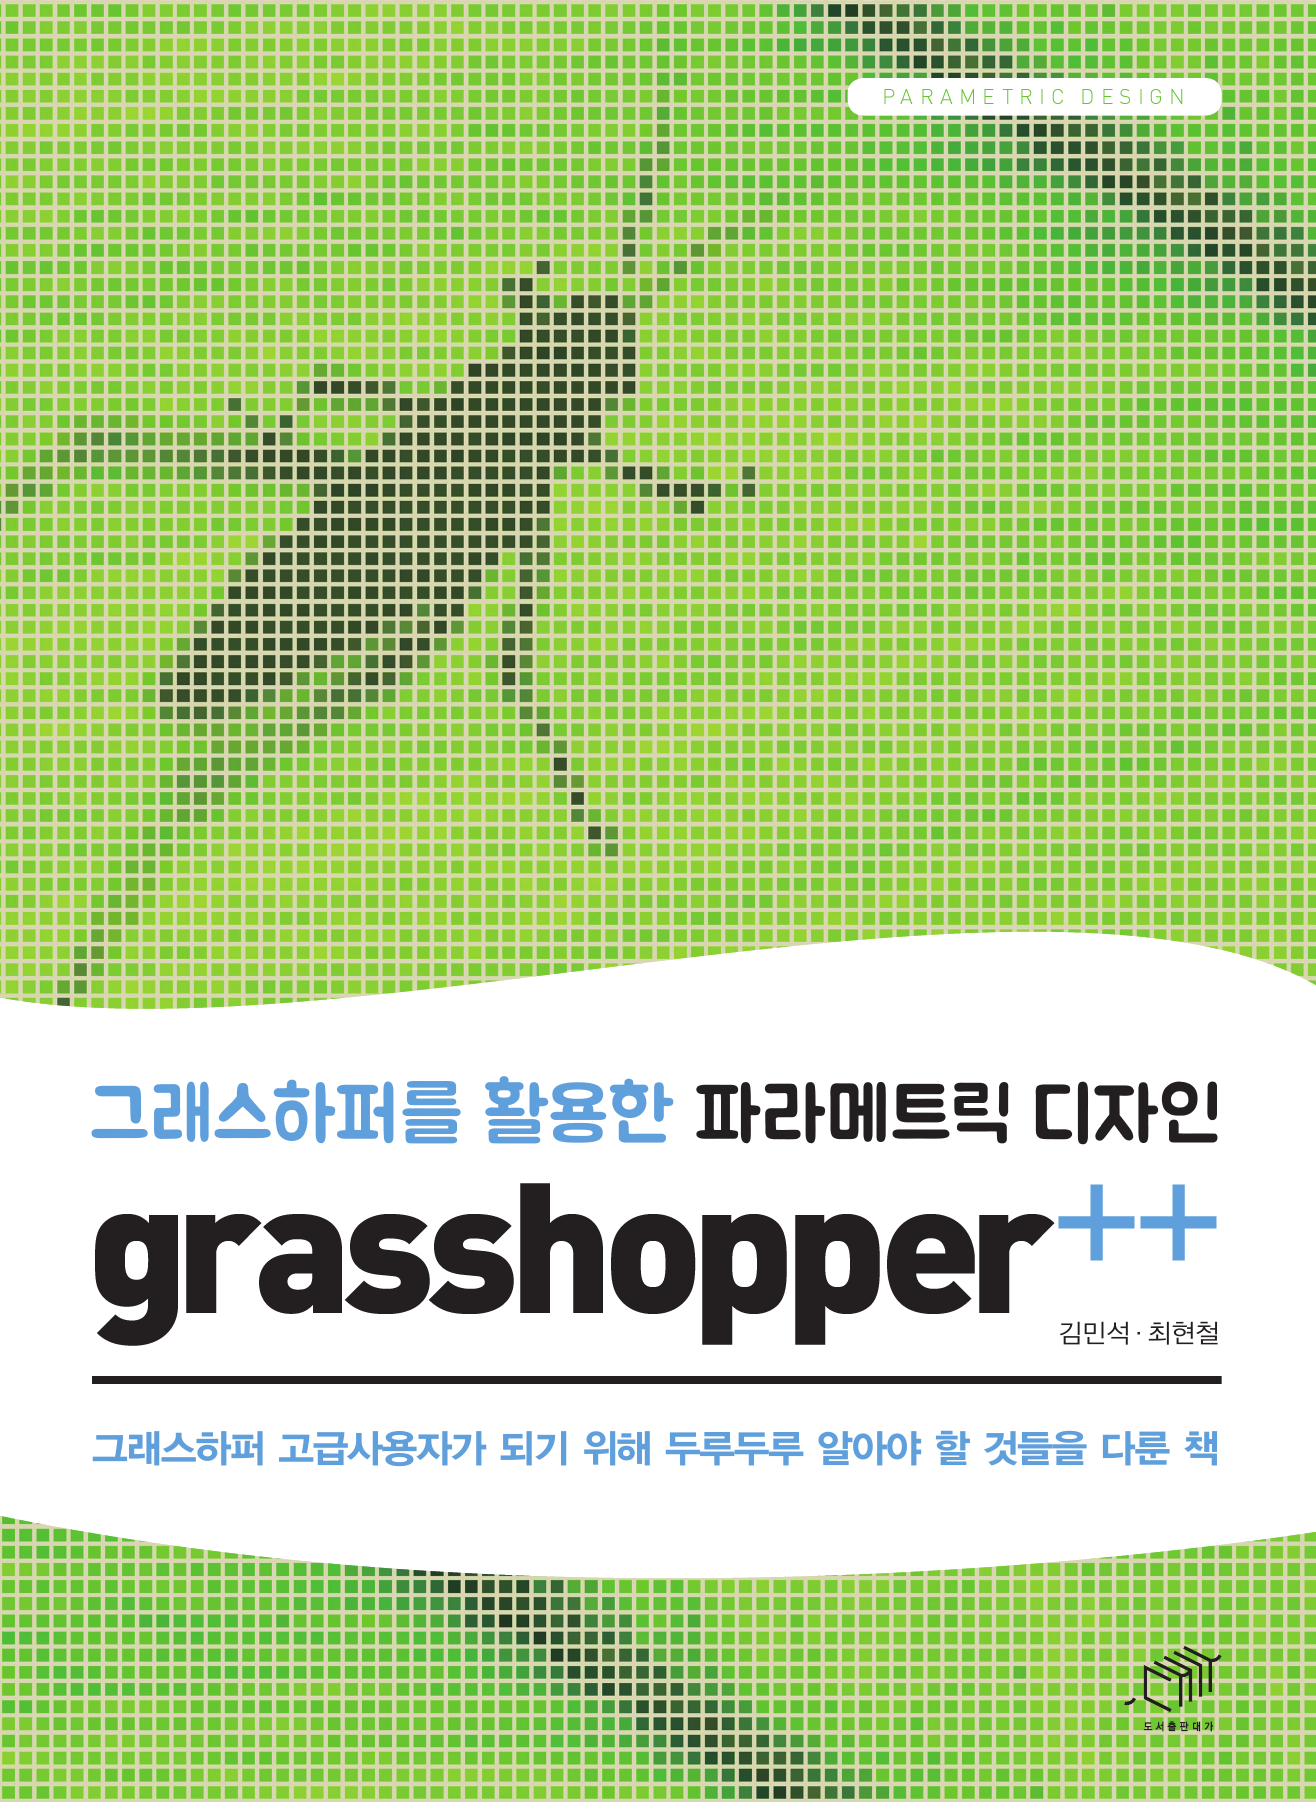 그래스하퍼를 활용한 파라메트릭 디자인 grasshopper++